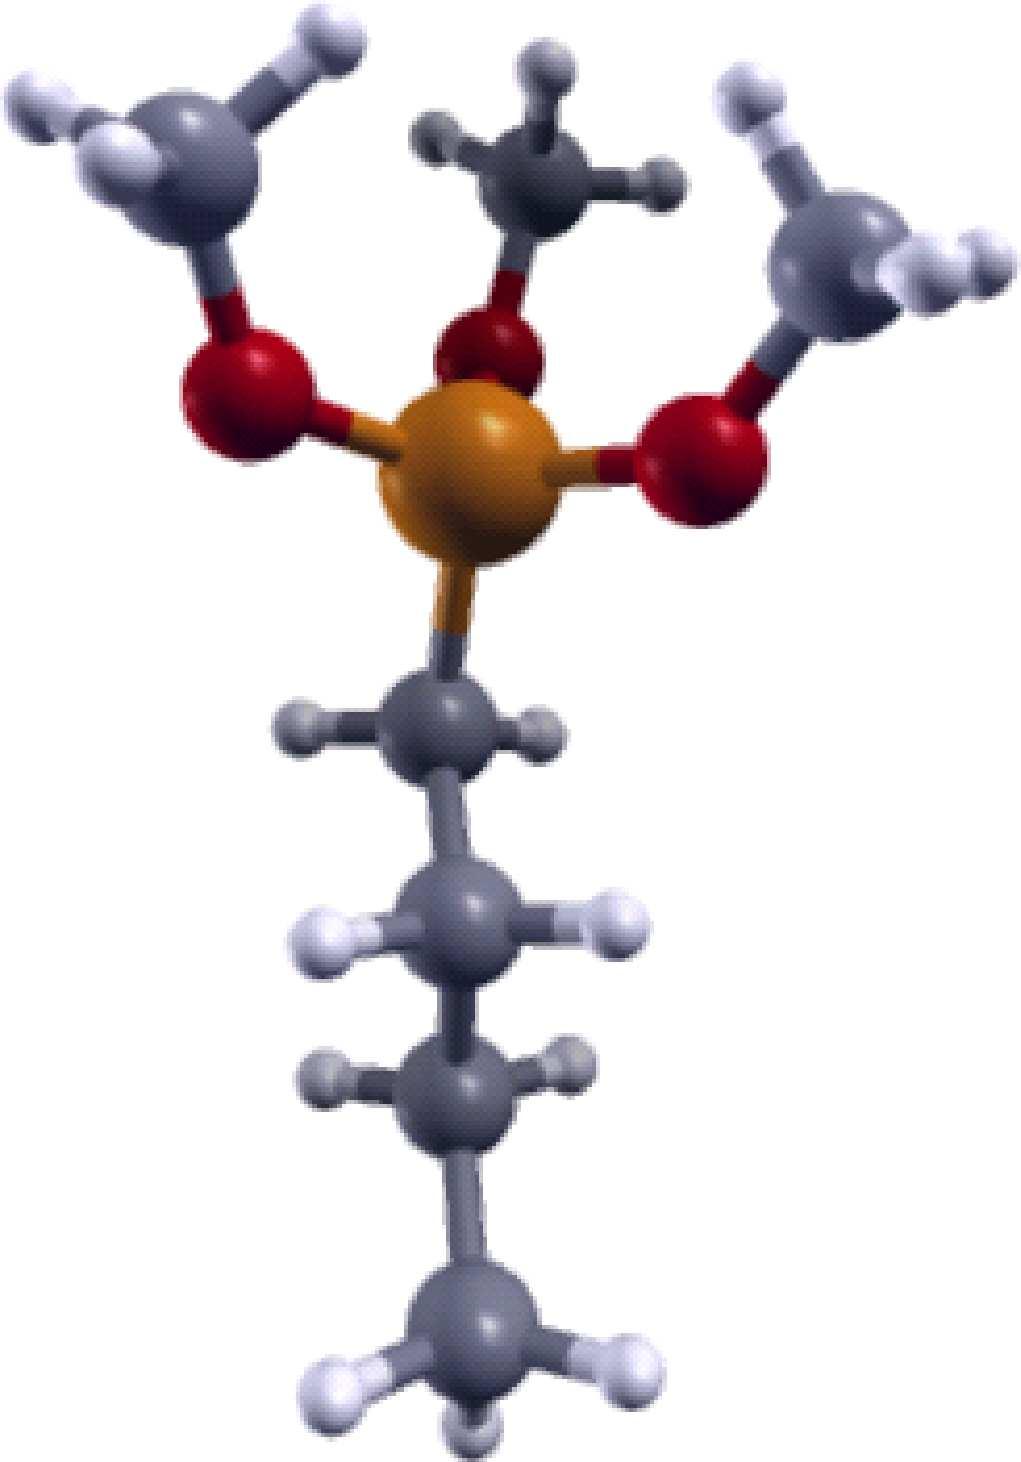 4.6 APLICAÇÕES 80 em um grupo amina e denominado (3-Aminopropyl)trimethoxysilane, que chamaremos amino. (a) Silano SiCH 3 (b) Silano ethyl (c) Silano amino Figura 4.